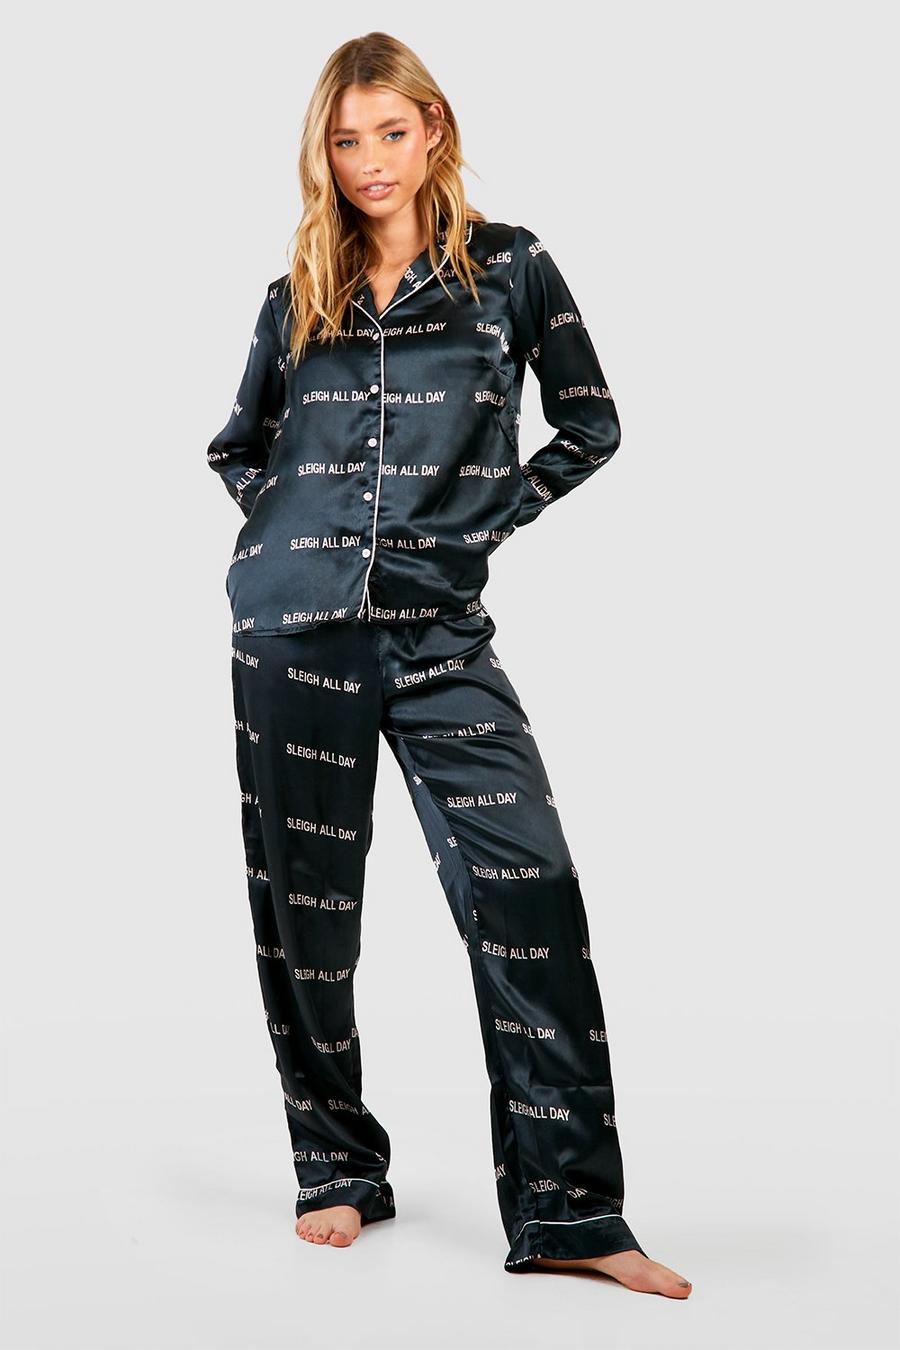 Navy Sleigh All Day Pyjamasset i satin